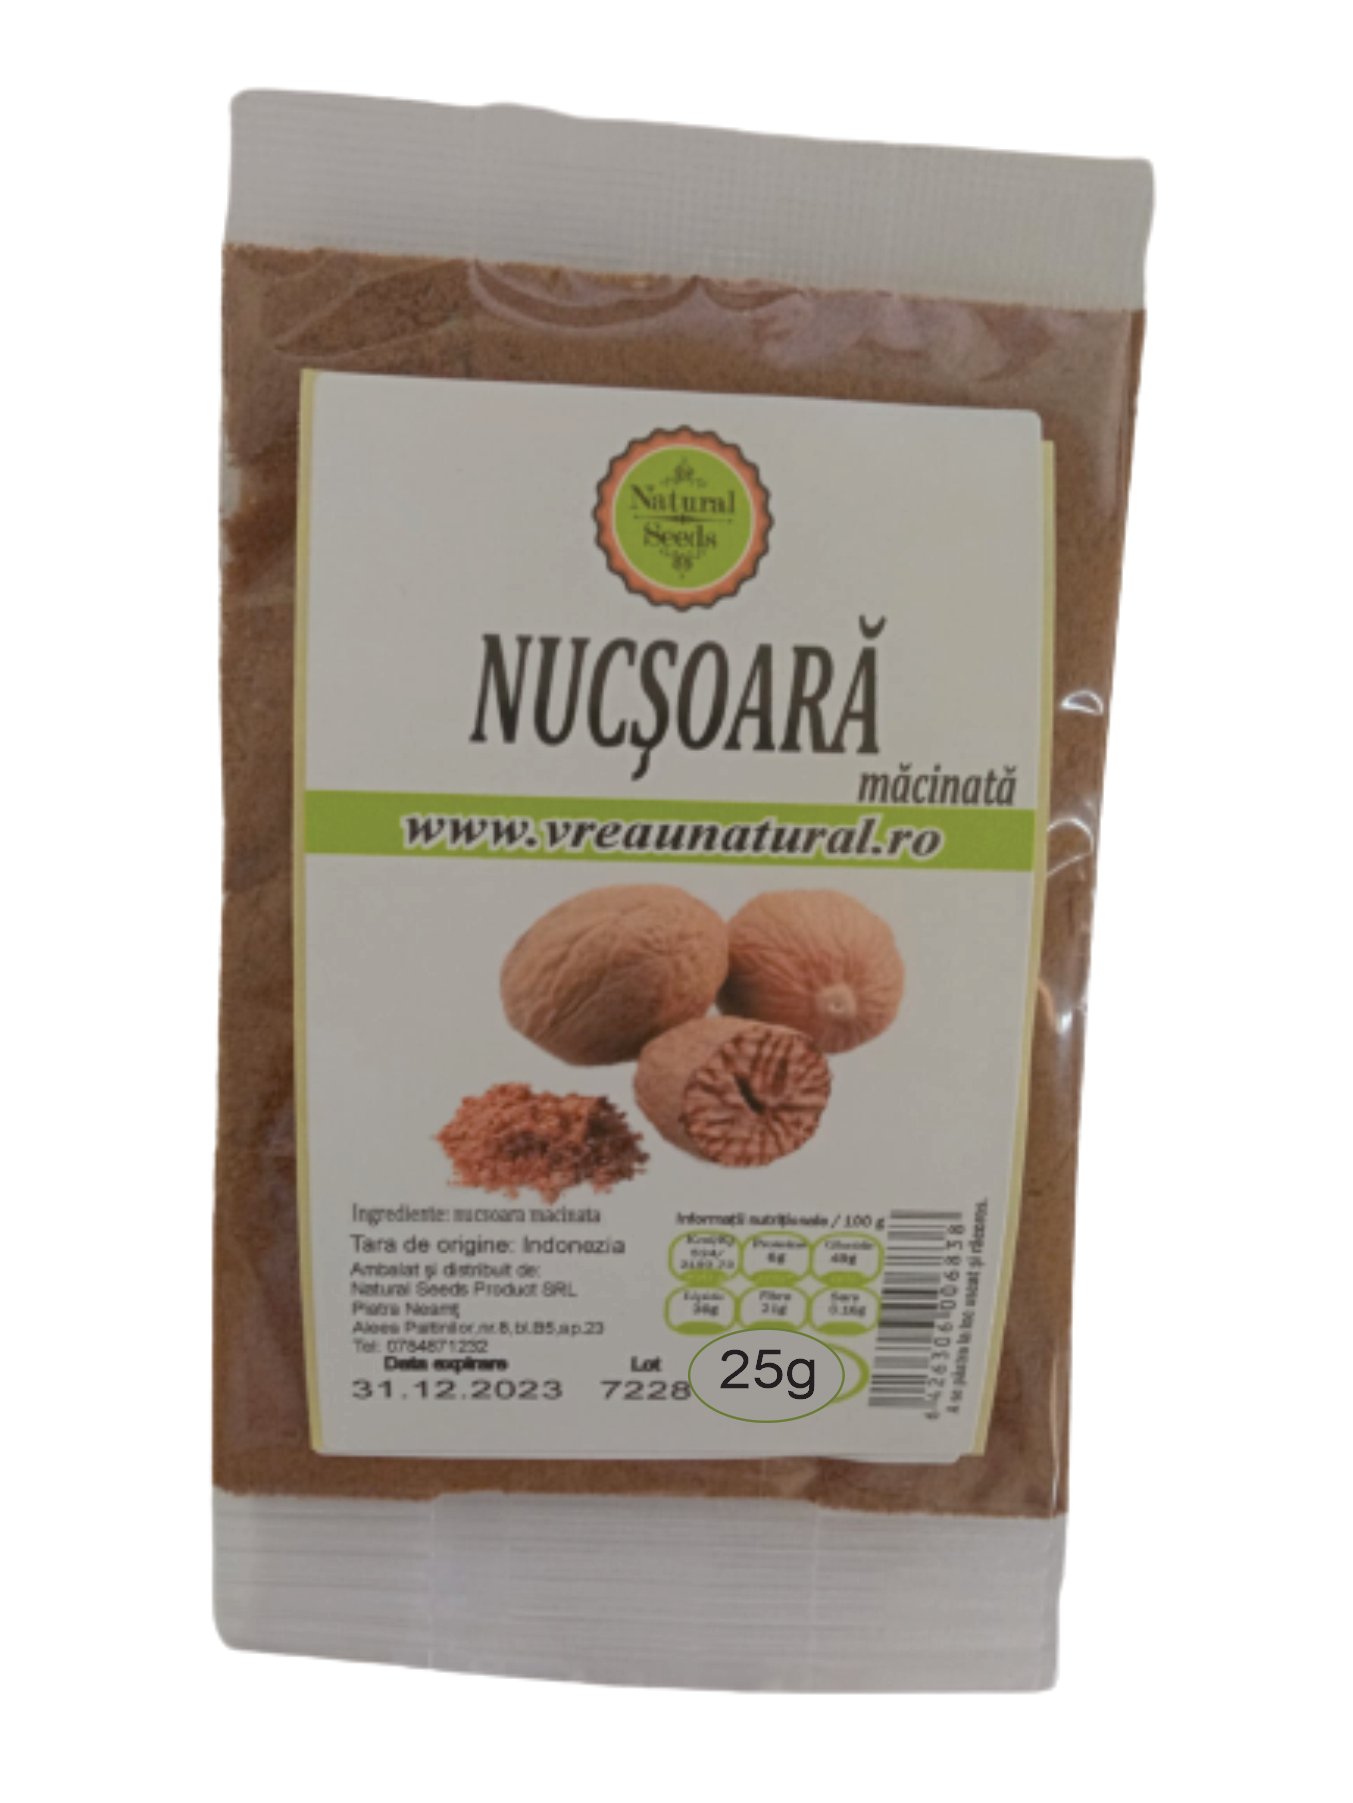 Nucsoara pudra, Natural Seeds Product